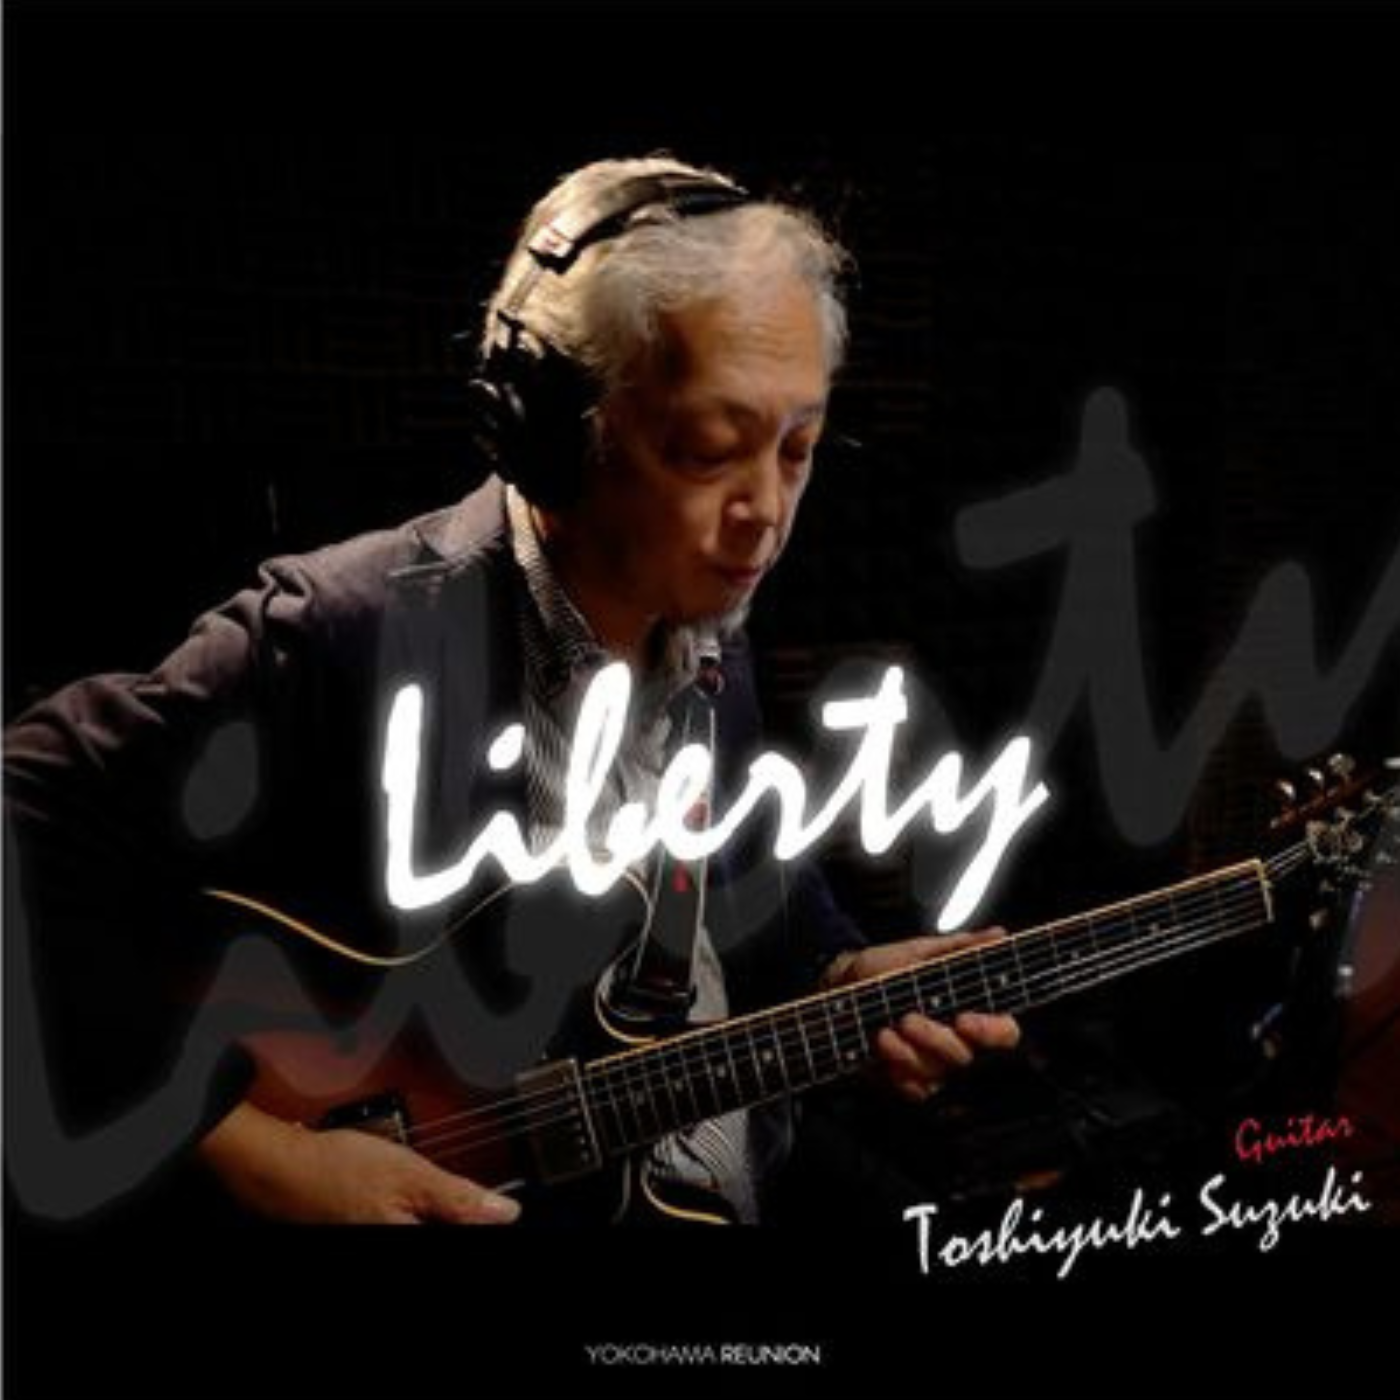 "Liberty" Toshiyuki Suzuki